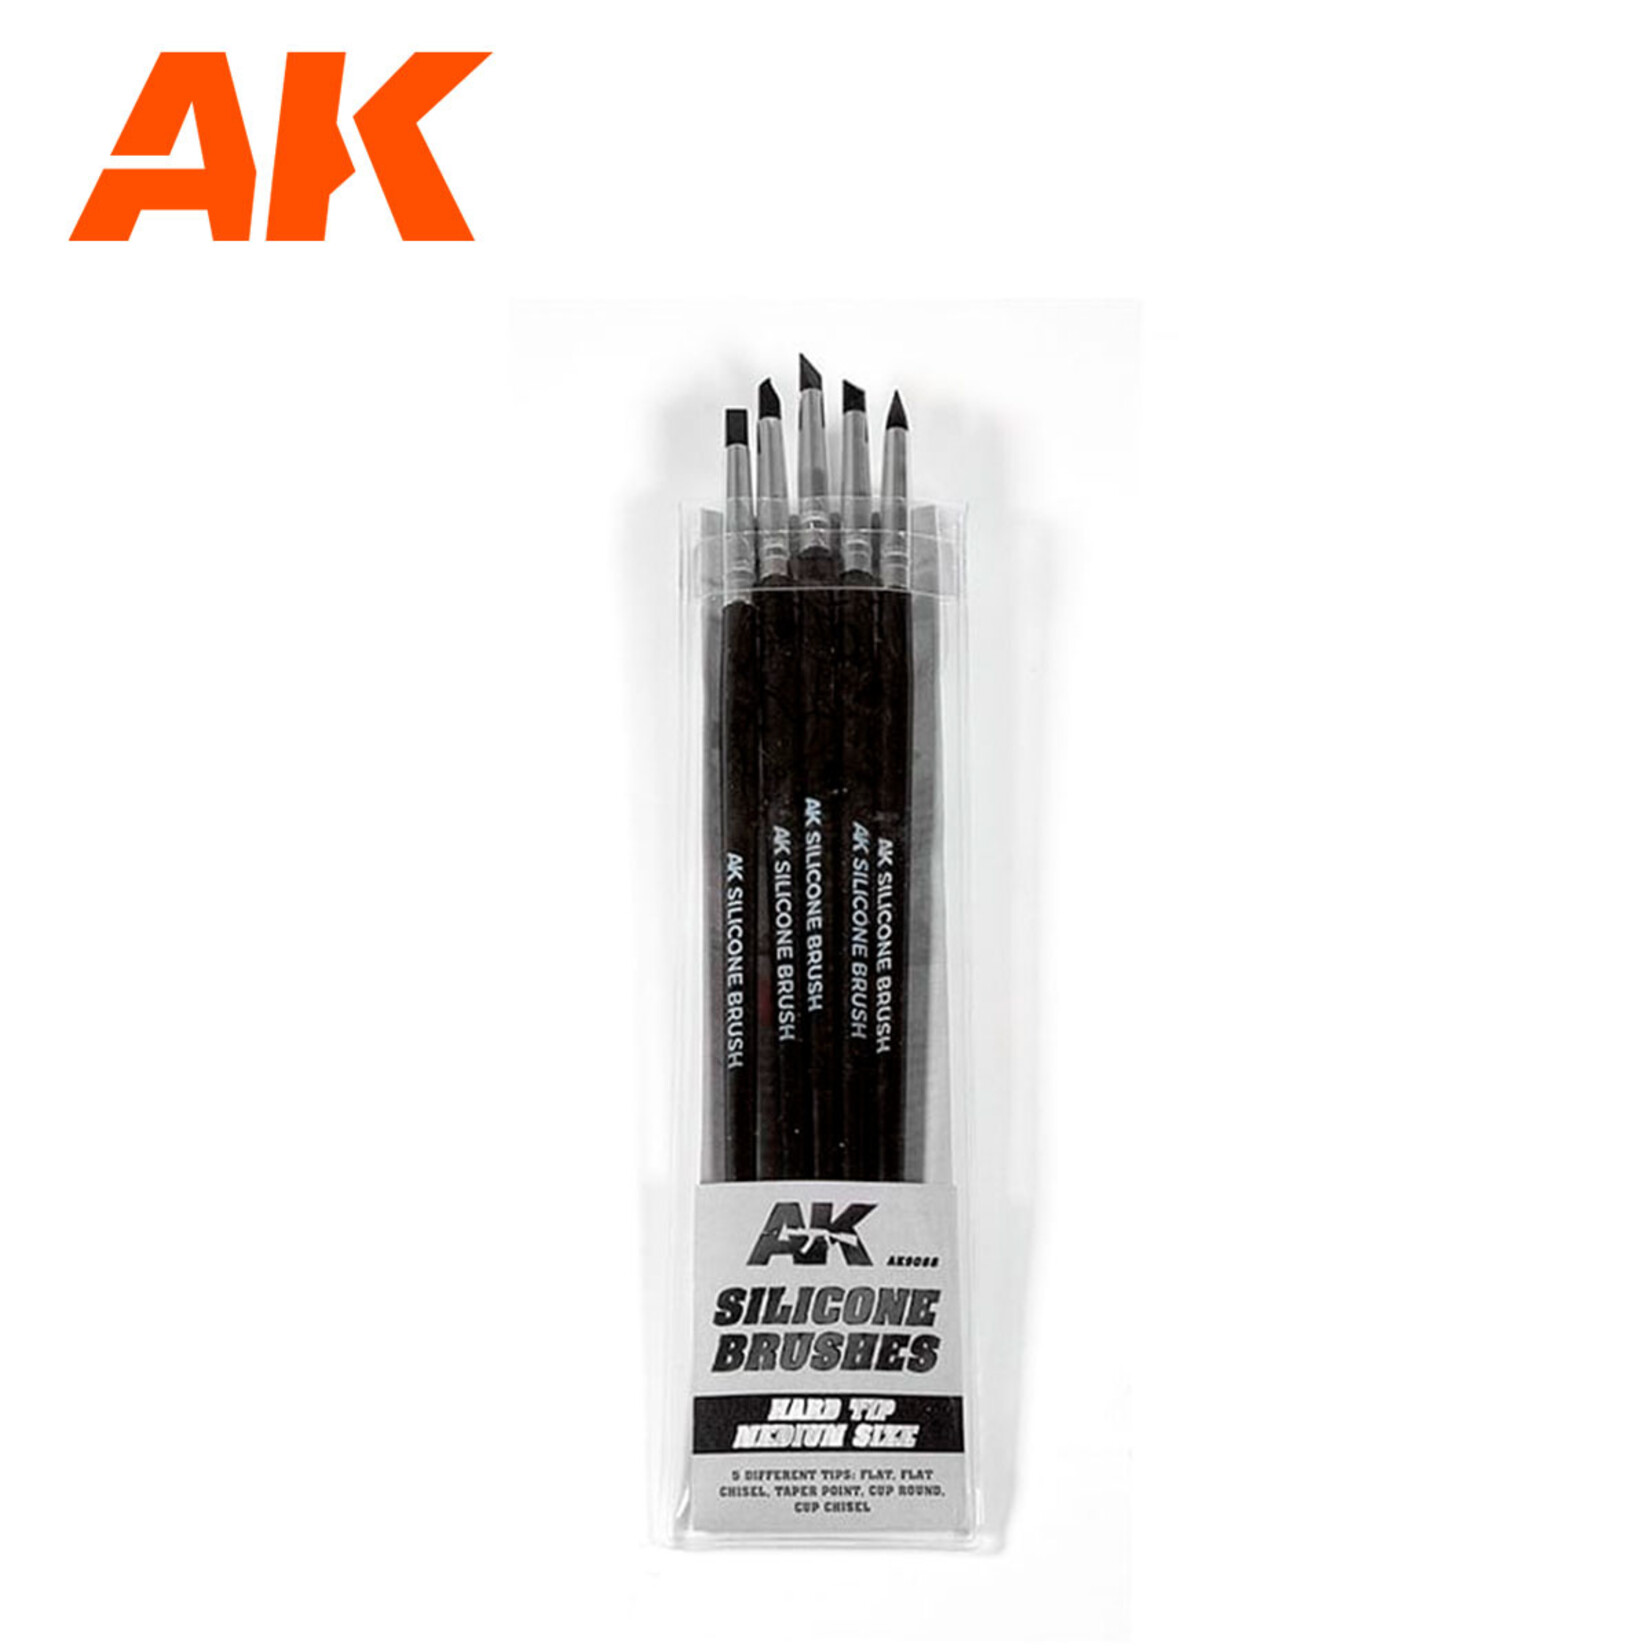 AK Interactive AK Silicone Brushes Hard Tip Medium Size